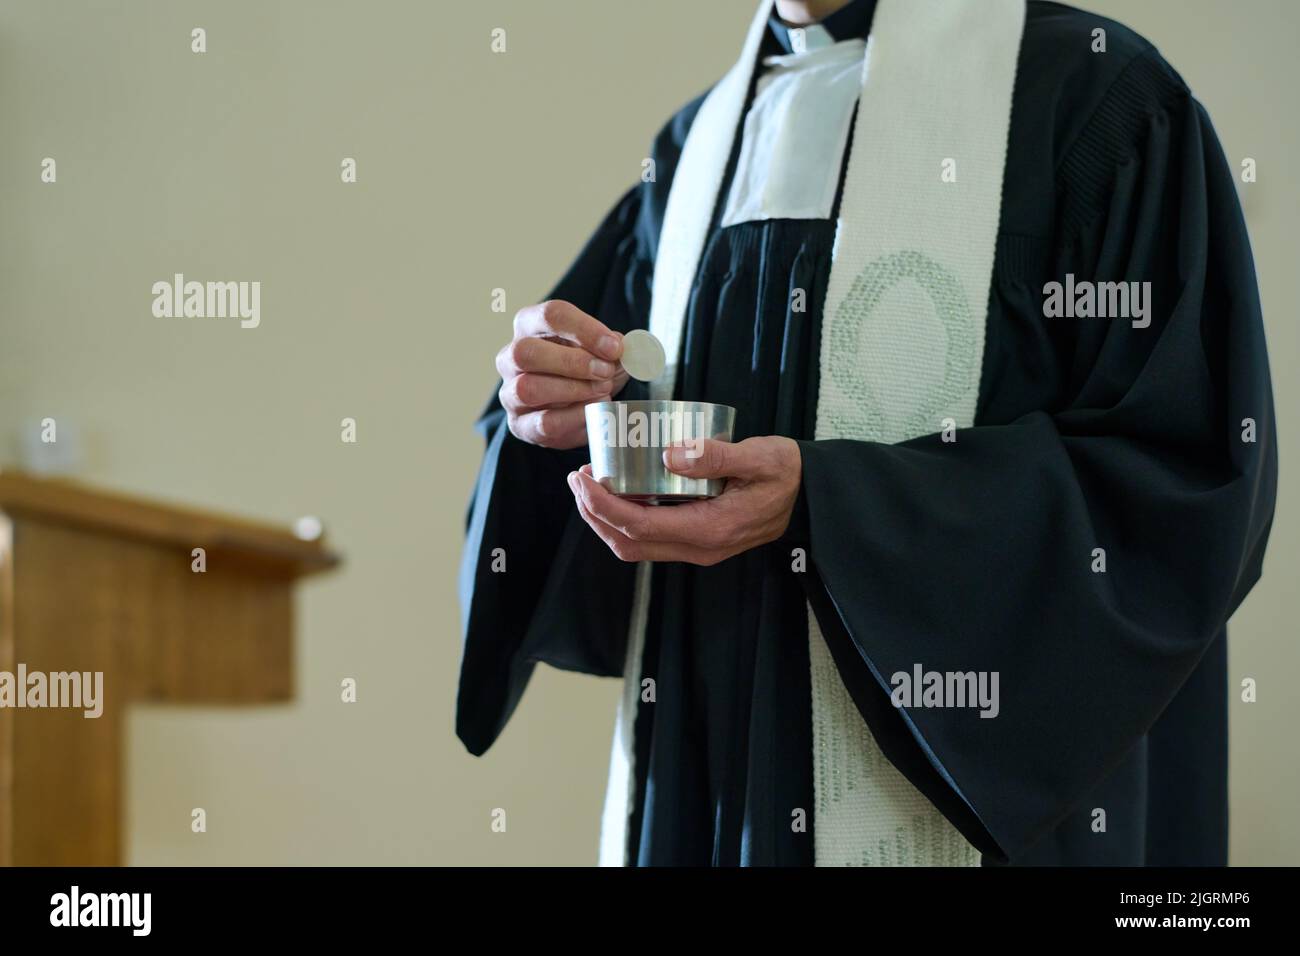 Prêtre de l'église catholique en cassock tenant une petite tasse avec du pain sans levain pour le rite de communion des paroissiens pendant la liturgie Banque D'Images